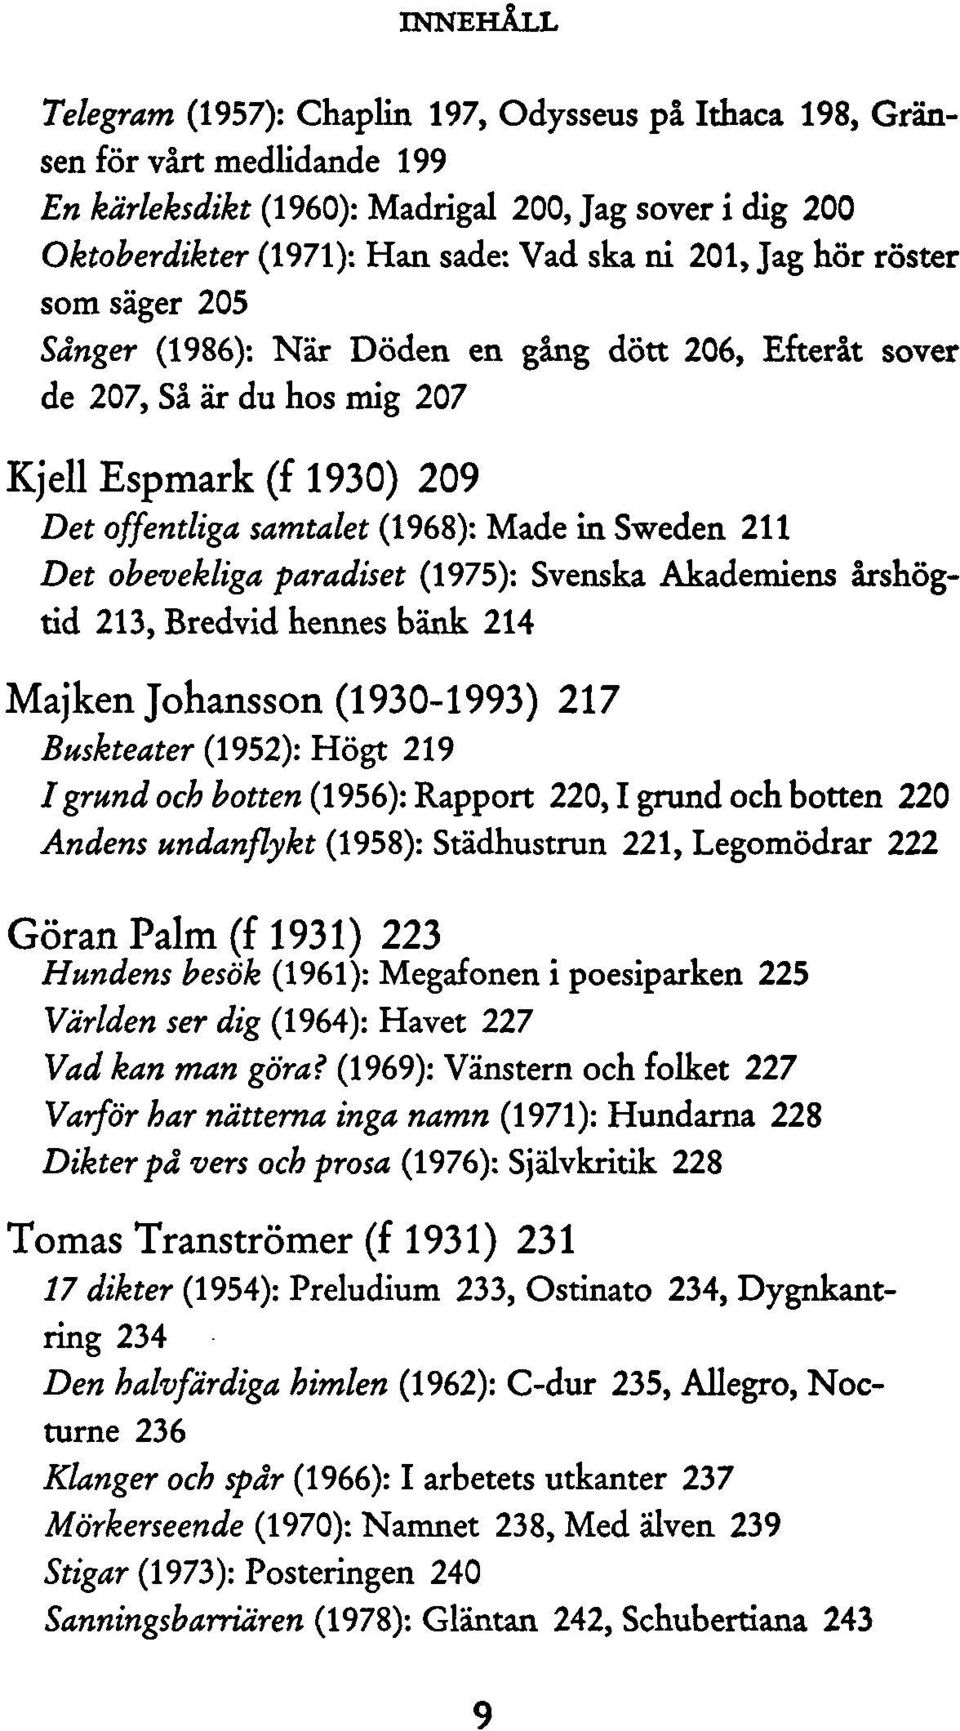 paradiset (1975): Svenska Akademiens årshögtid 213, Bredvid hennes bänk 214 Majken Johansson (1930-1993) 217 Buskteater (1952): Högt 219 /grund och botten (1956): Rapport 220,1 grund och botten 220